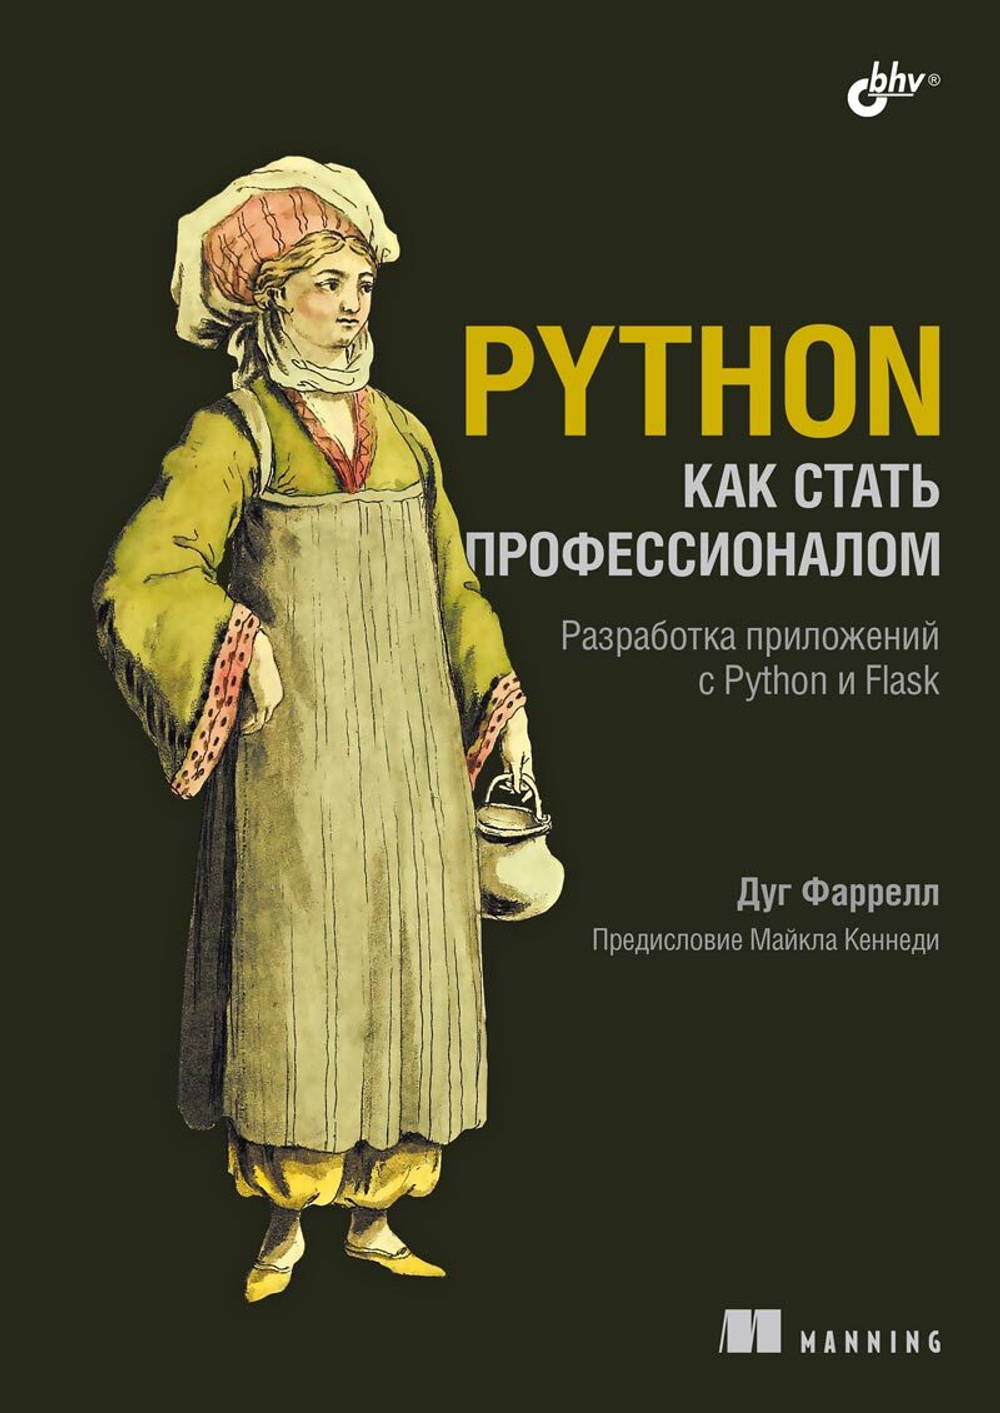 Книга: Фаррелл Д. "Python. Как стать профессионалом"